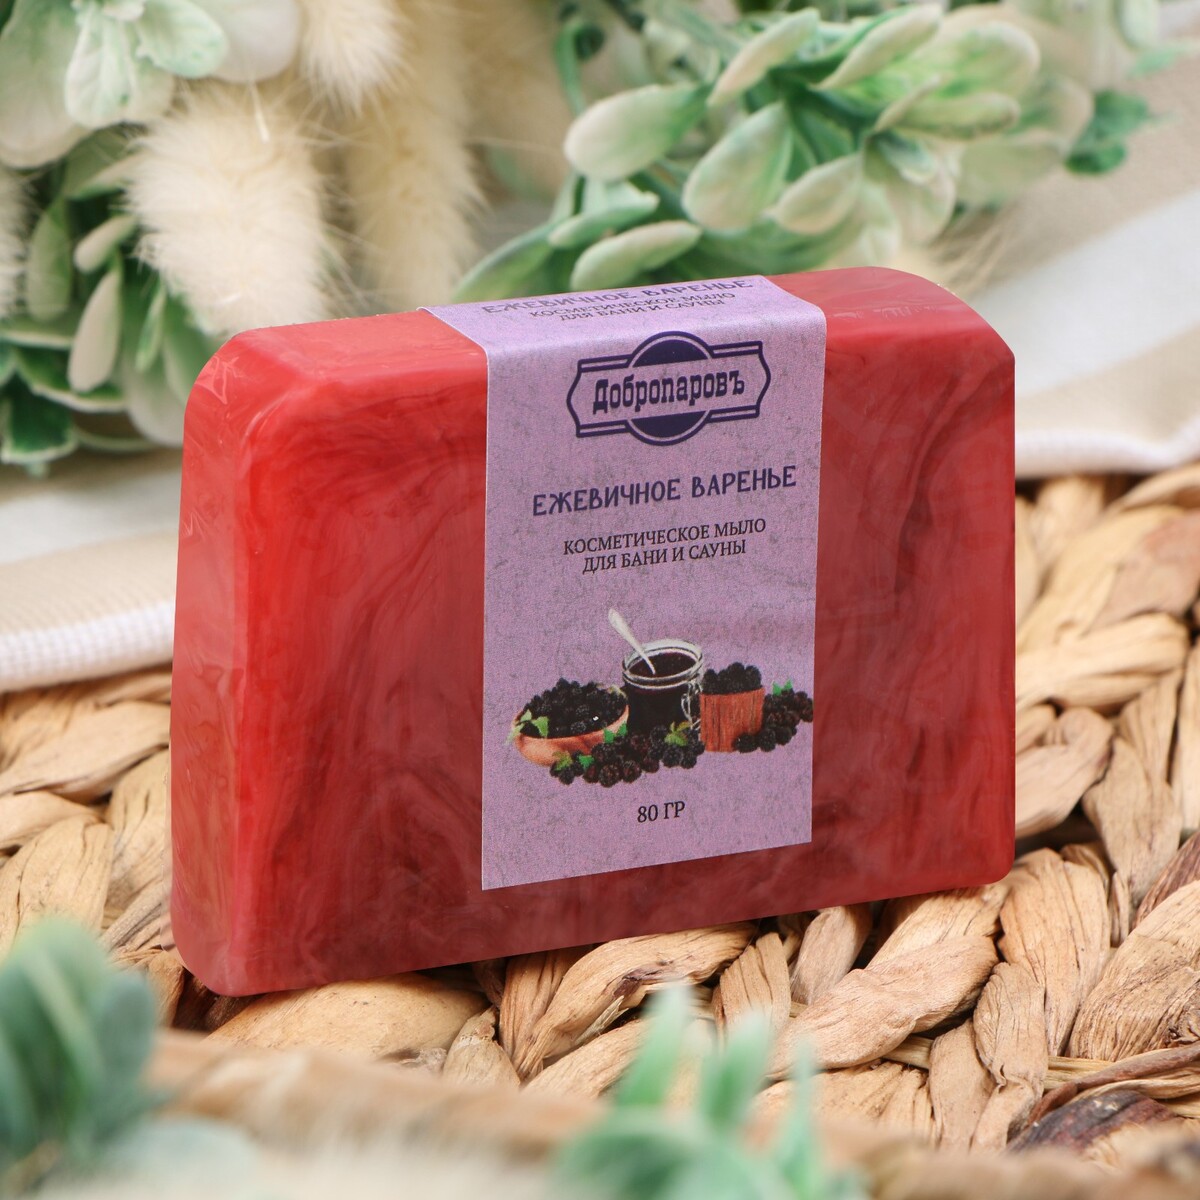 Мыло спа - уход для бани и сауны туалетное мыло косметическое exxe роза и грейпфрут 4 70 г